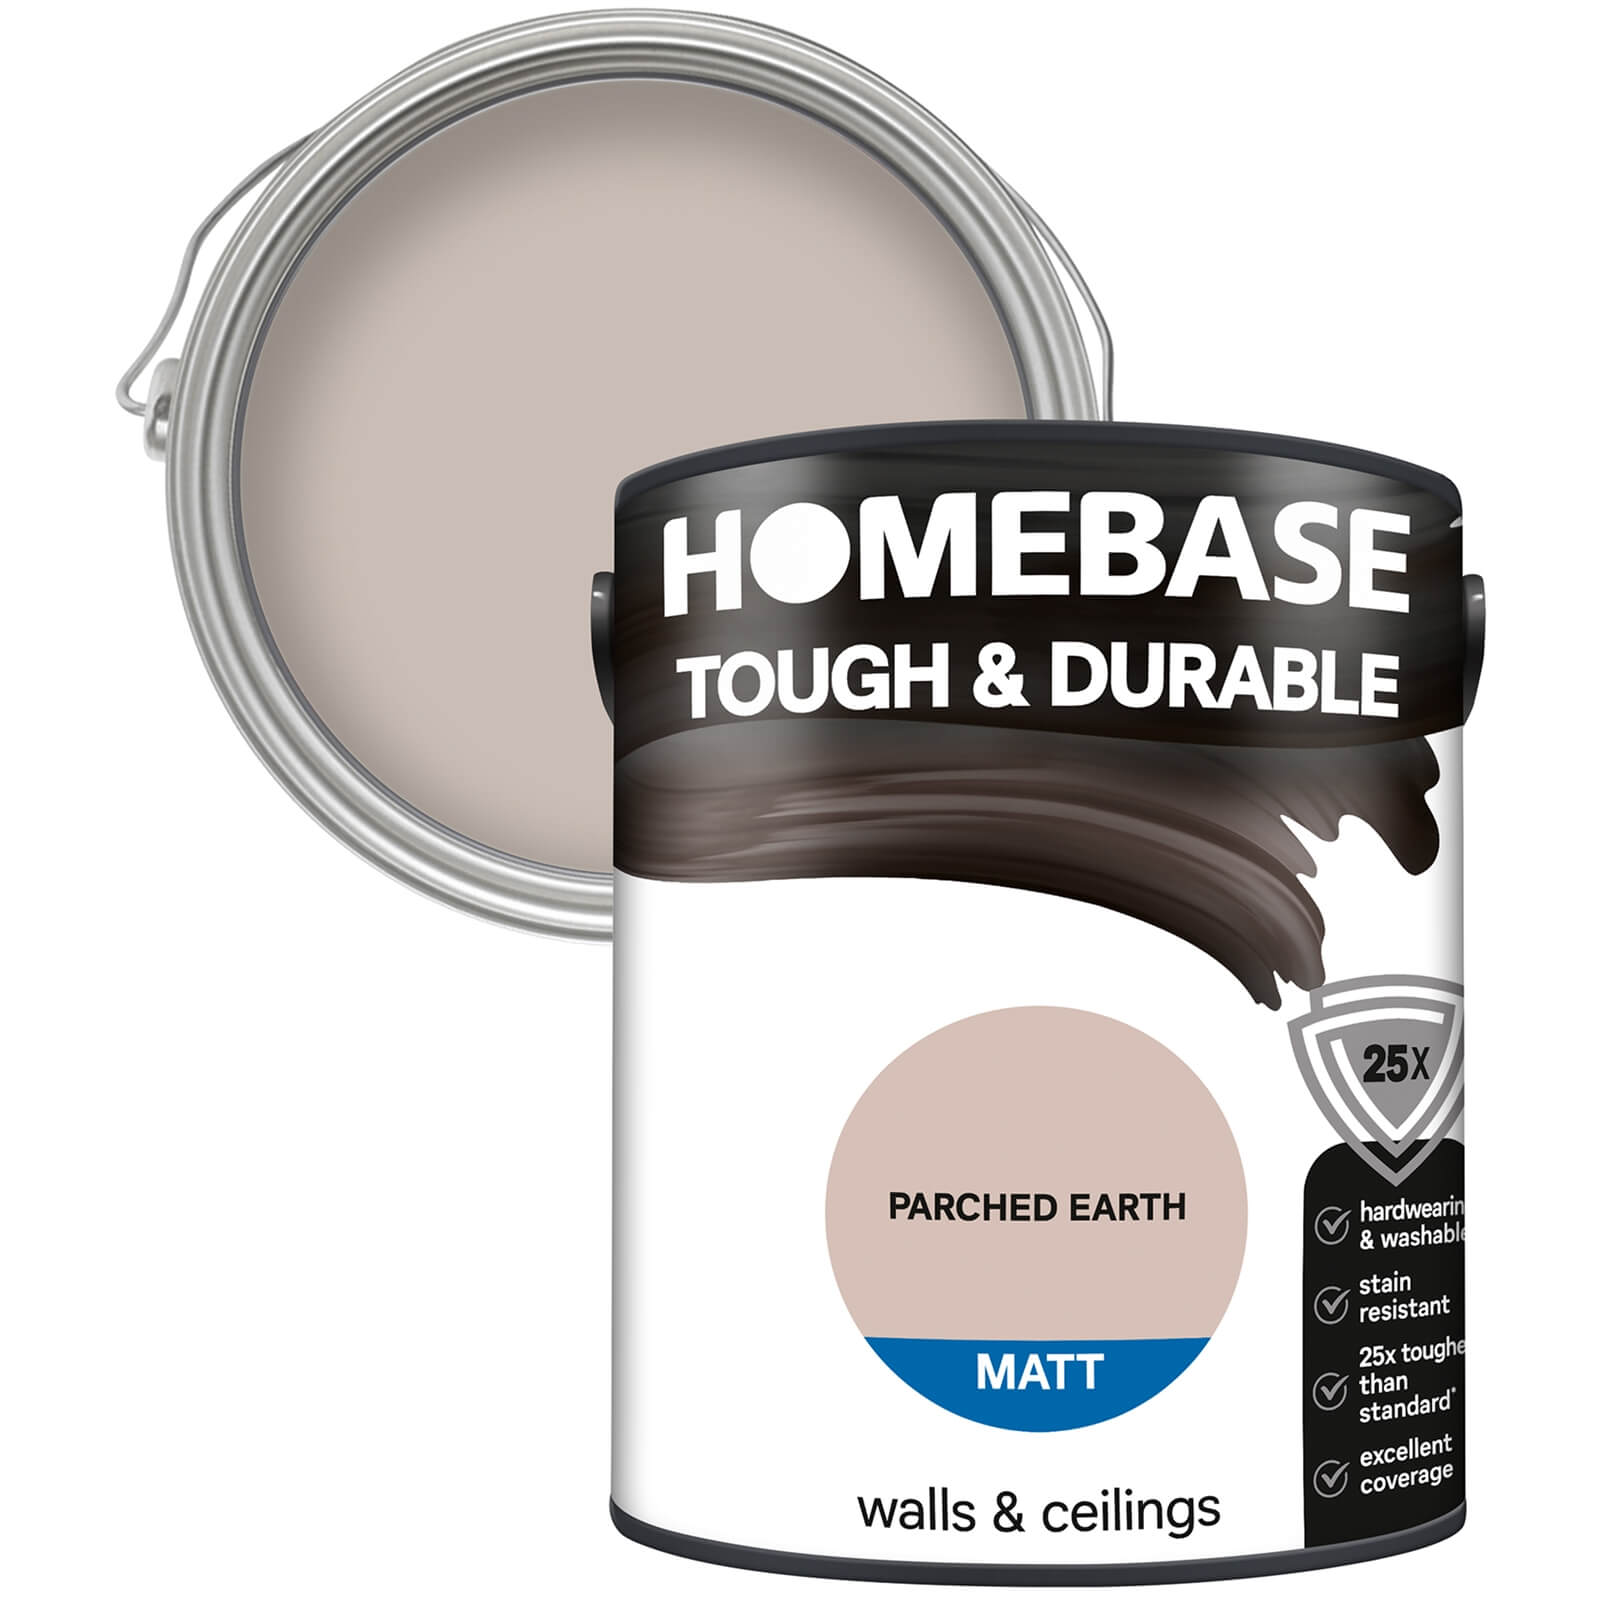 Homebase Tough & Durable Matt Paint Parched Earth - 5L